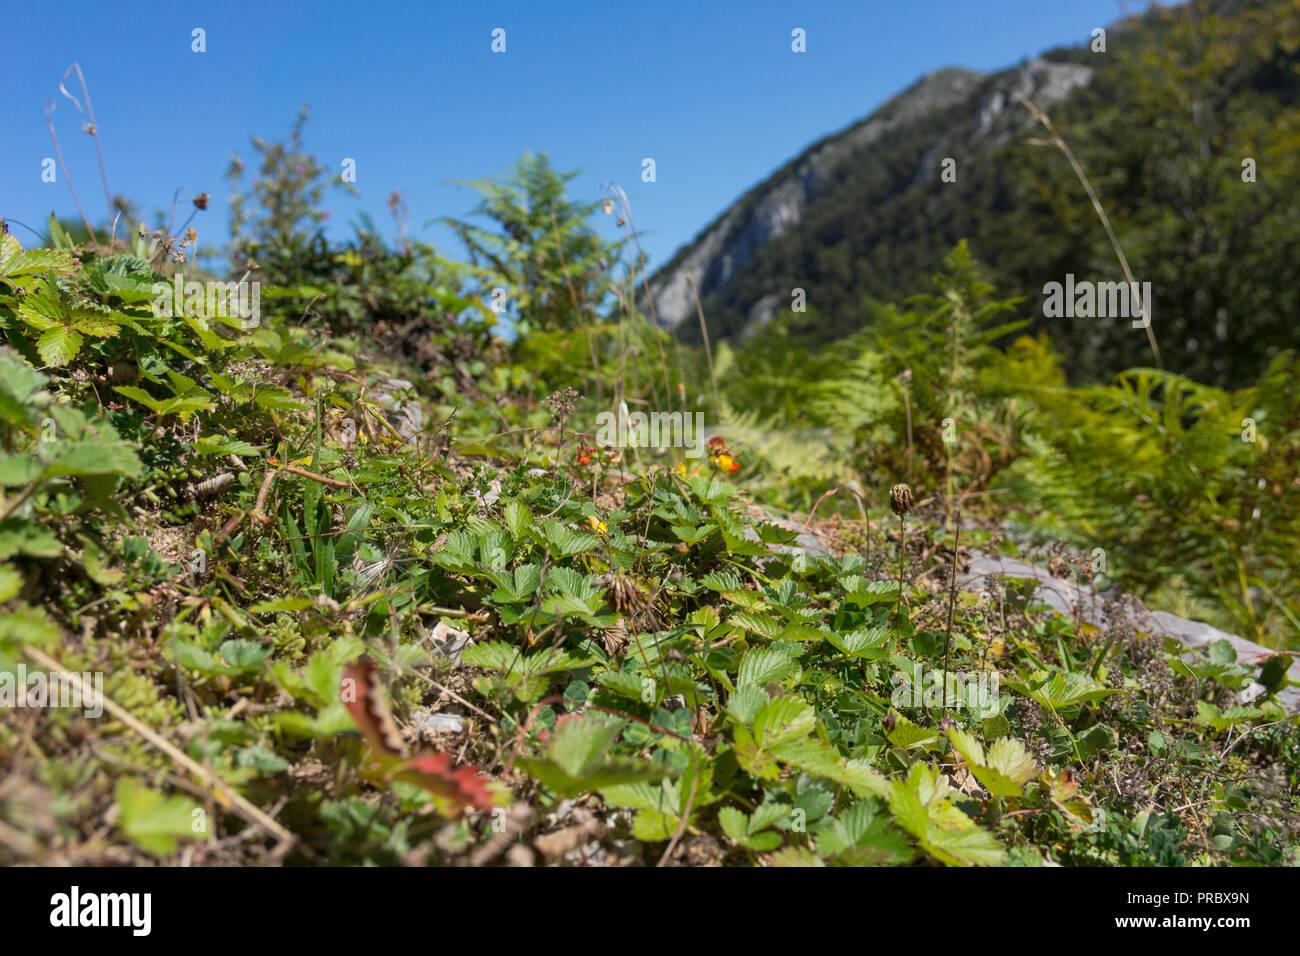 Fraisiers sauvages dans leur cadre naturel, élevé dans les montagnes du Parc National Picos de Europa, l'Espagne Banque D'Images